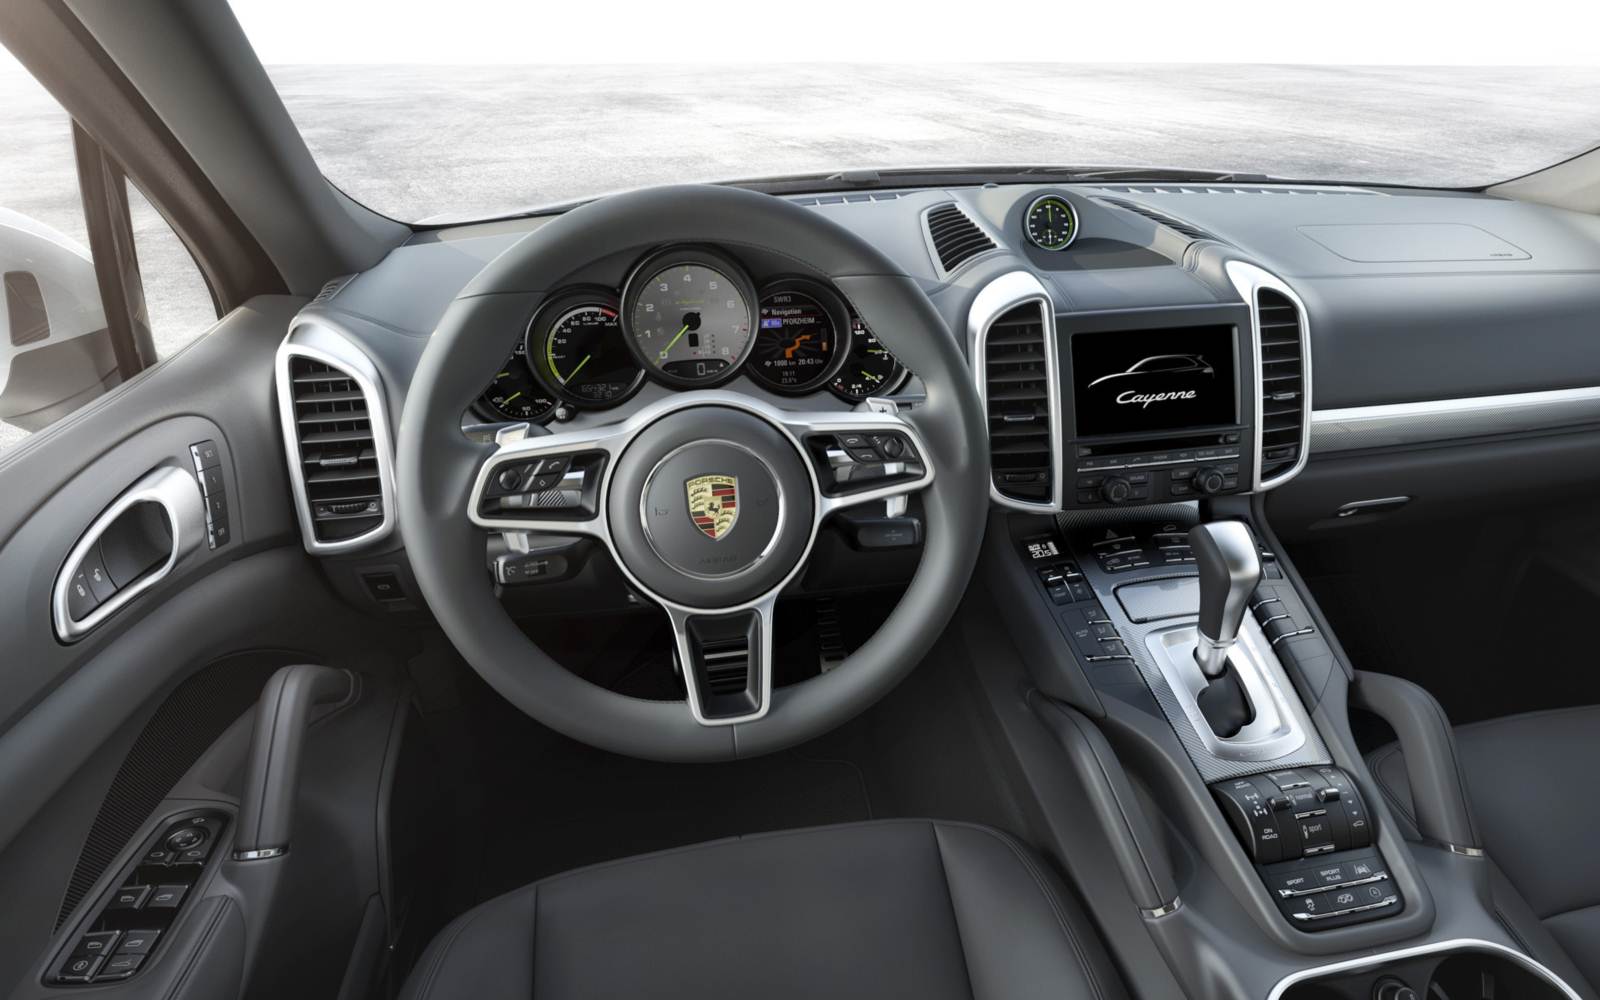 Porsche Cayenne 2015 - interior